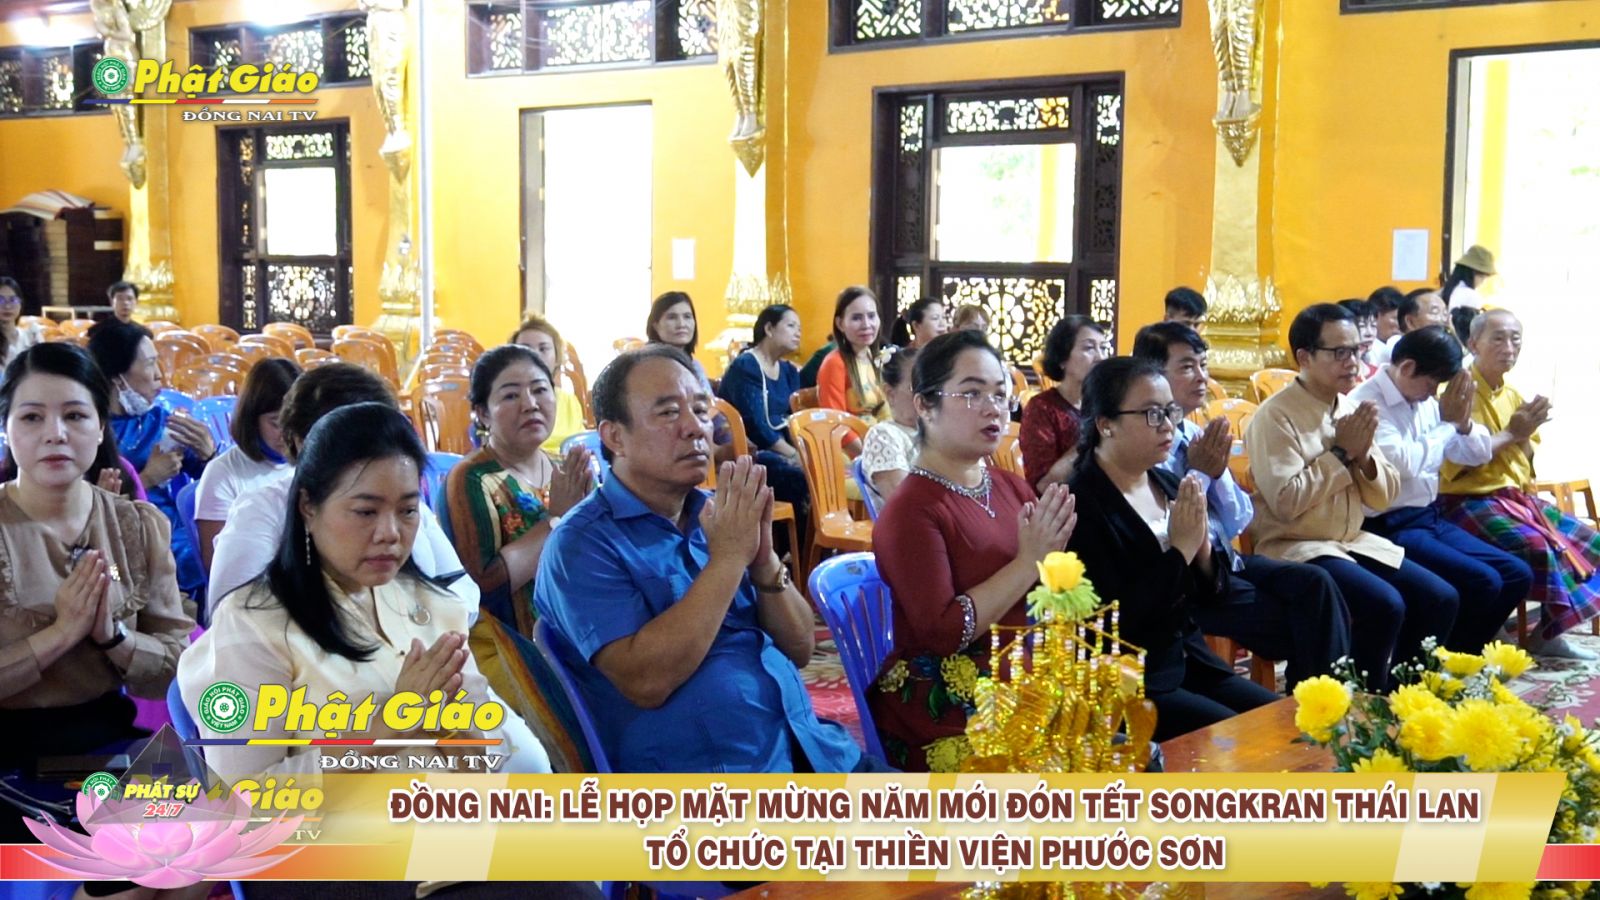 [Video] Đồng Nai: Lễ Họp Mặt Mừng Năm Mới – đón tết SongKran Thái Lan tại Thiền viện Phước Sơn kết nối tình hữu nghị Thái Lan - Đồng Nai.